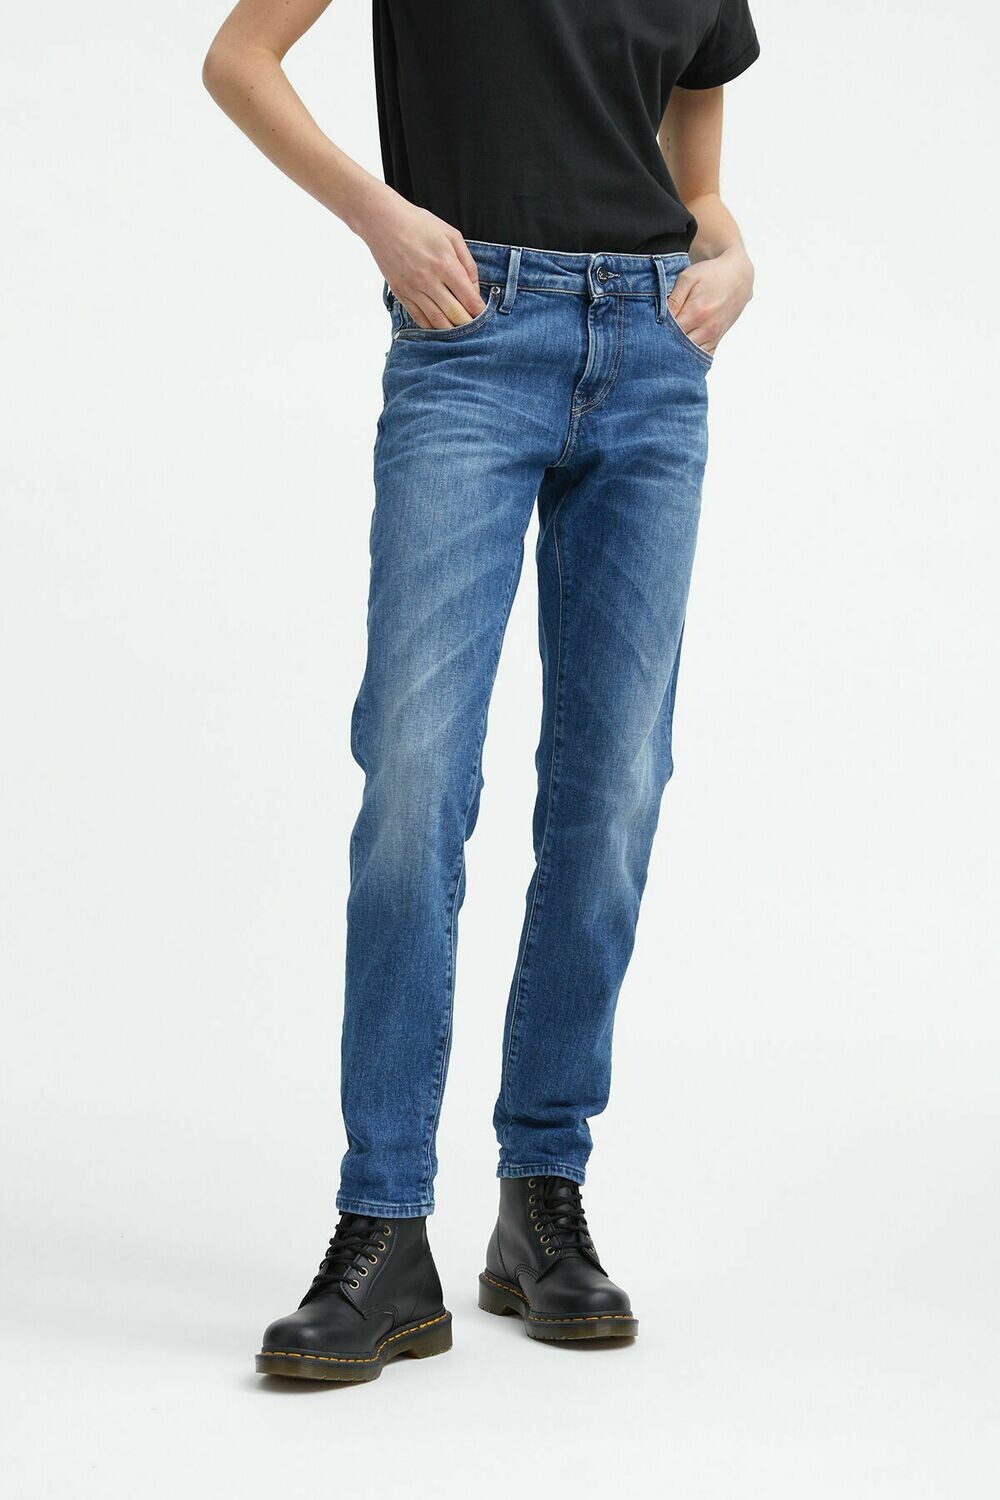 Denham Monroe Jeans